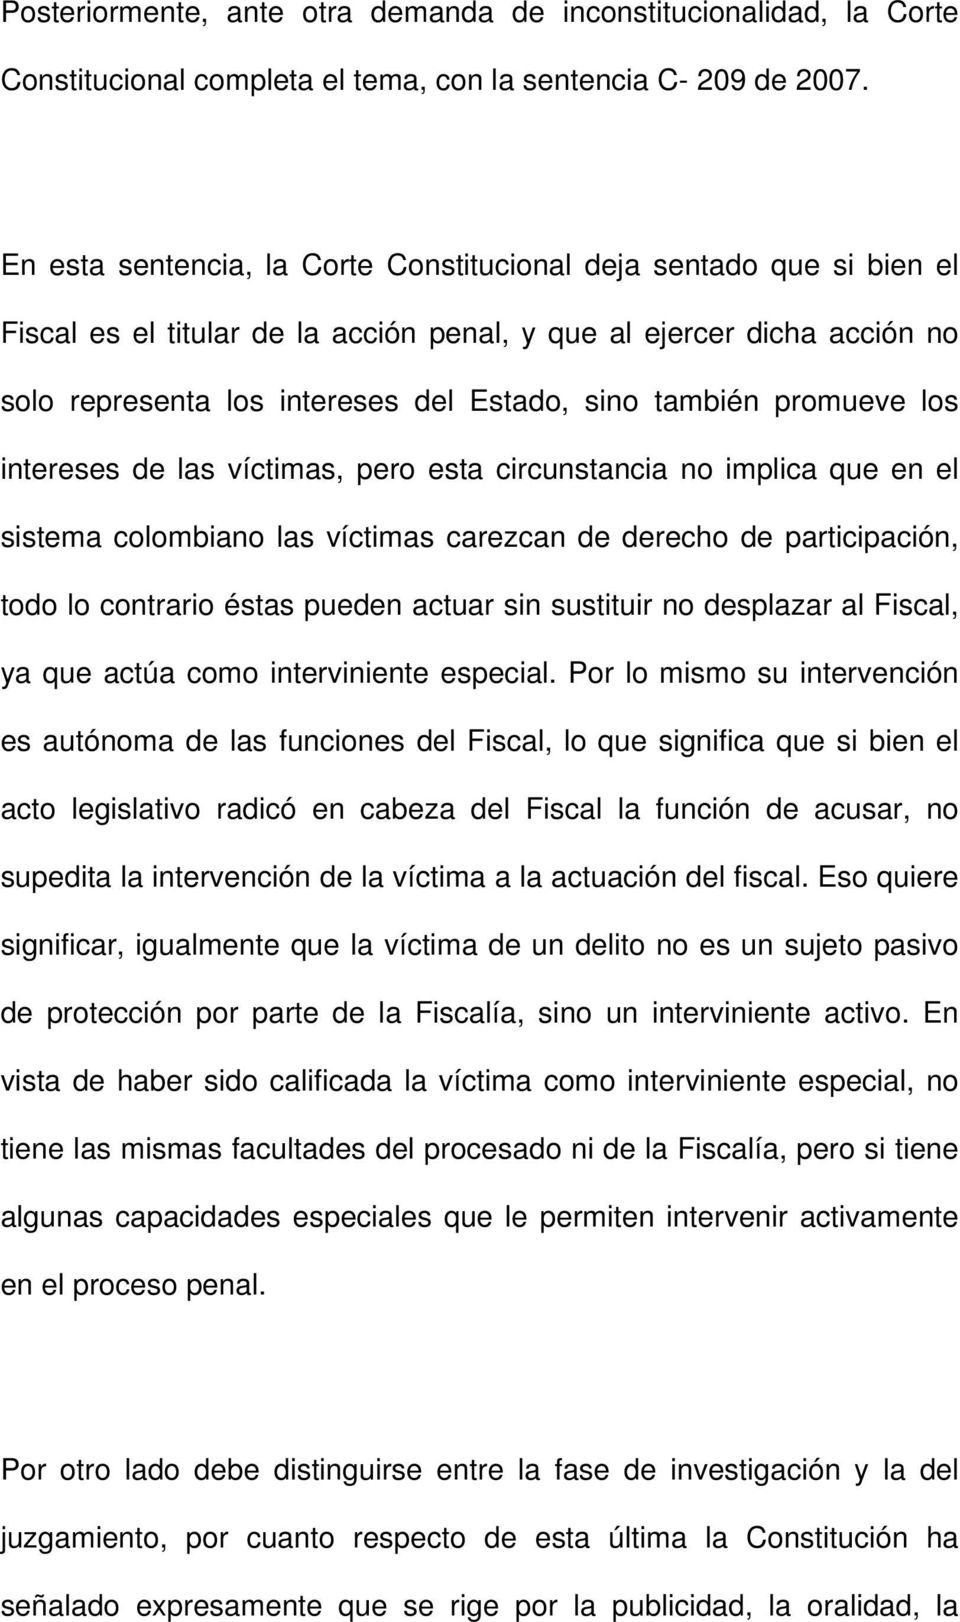 promueve los intereses de las víctimas, pero esta circunstancia no implica que en el sistema colombiano las víctimas carezcan de derecho de participación, todo lo contrario éstas pueden actuar sin